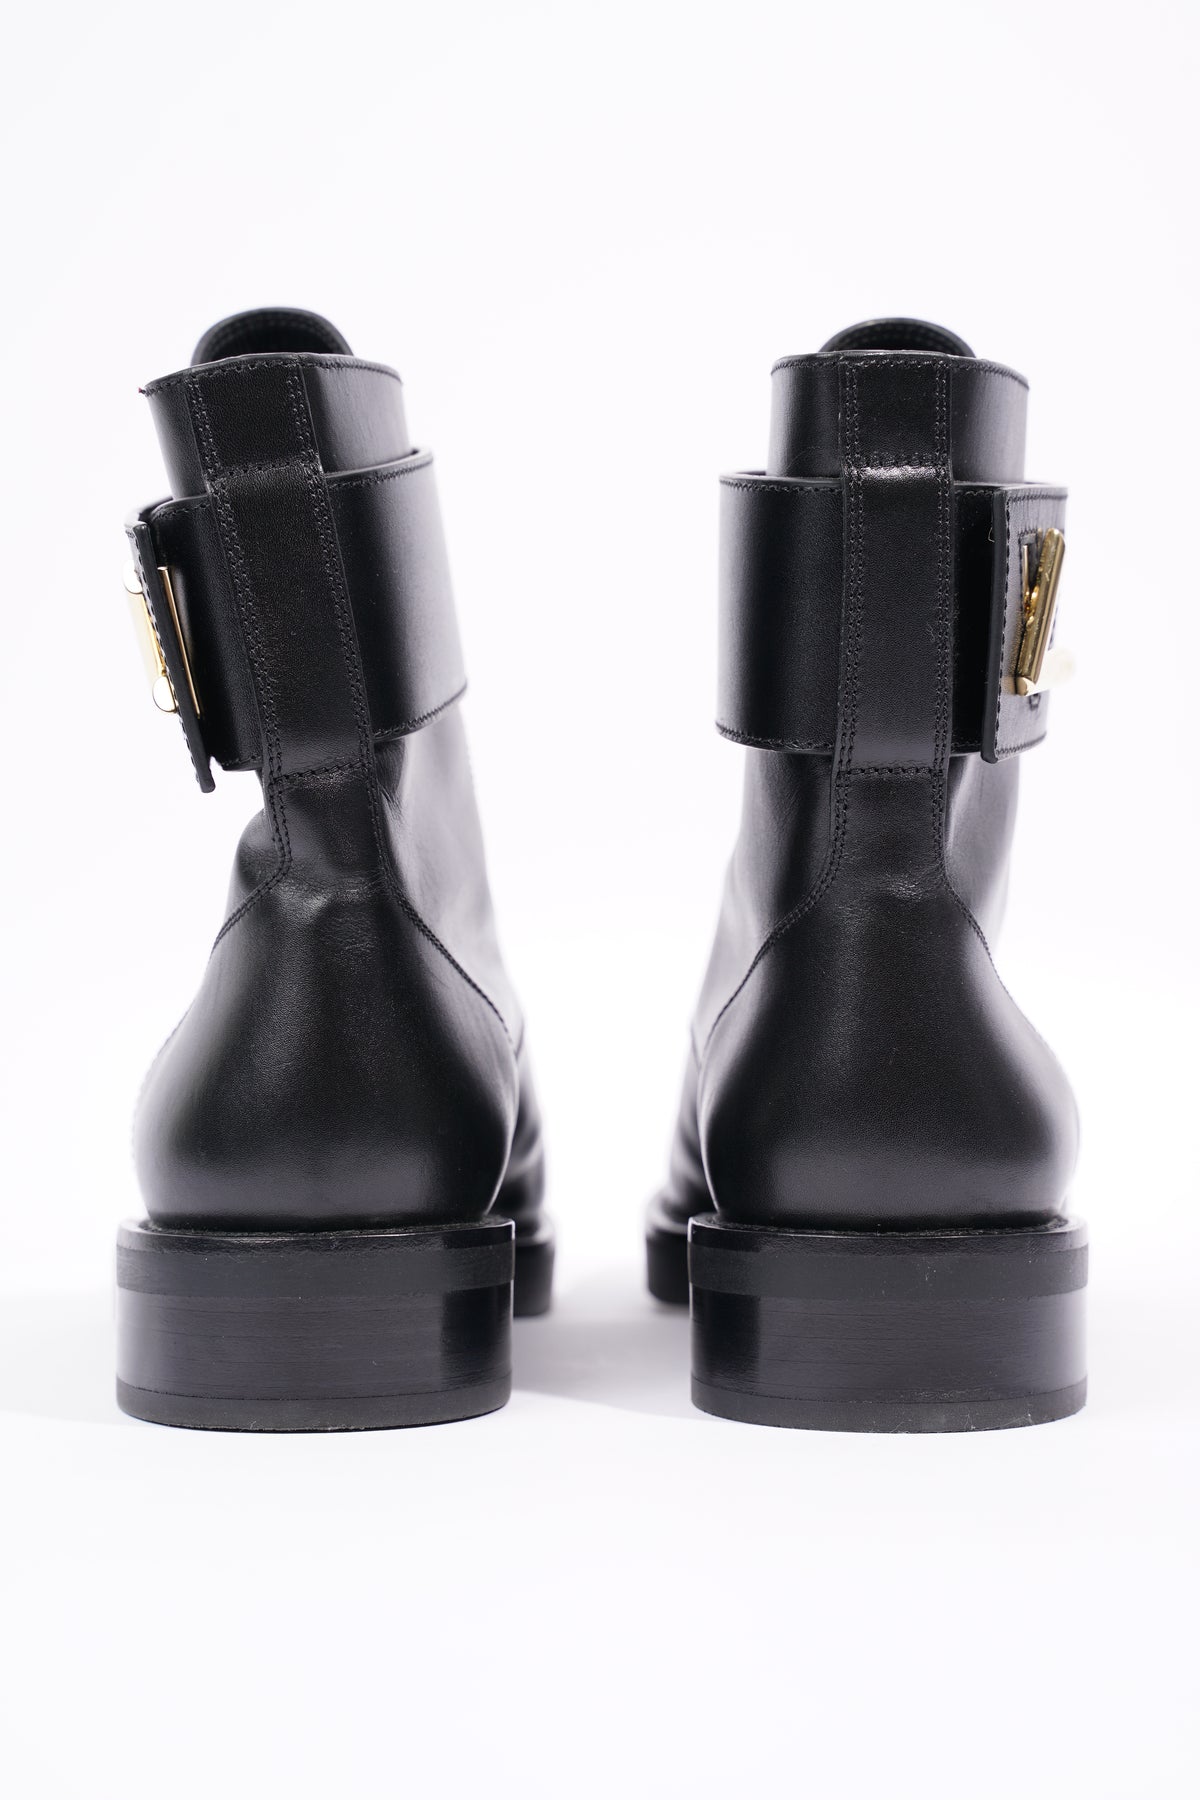 Louis Vuitton Womens Wonderland Boot Black / Gold EU 36 / UK 3 – Luxe  Collective